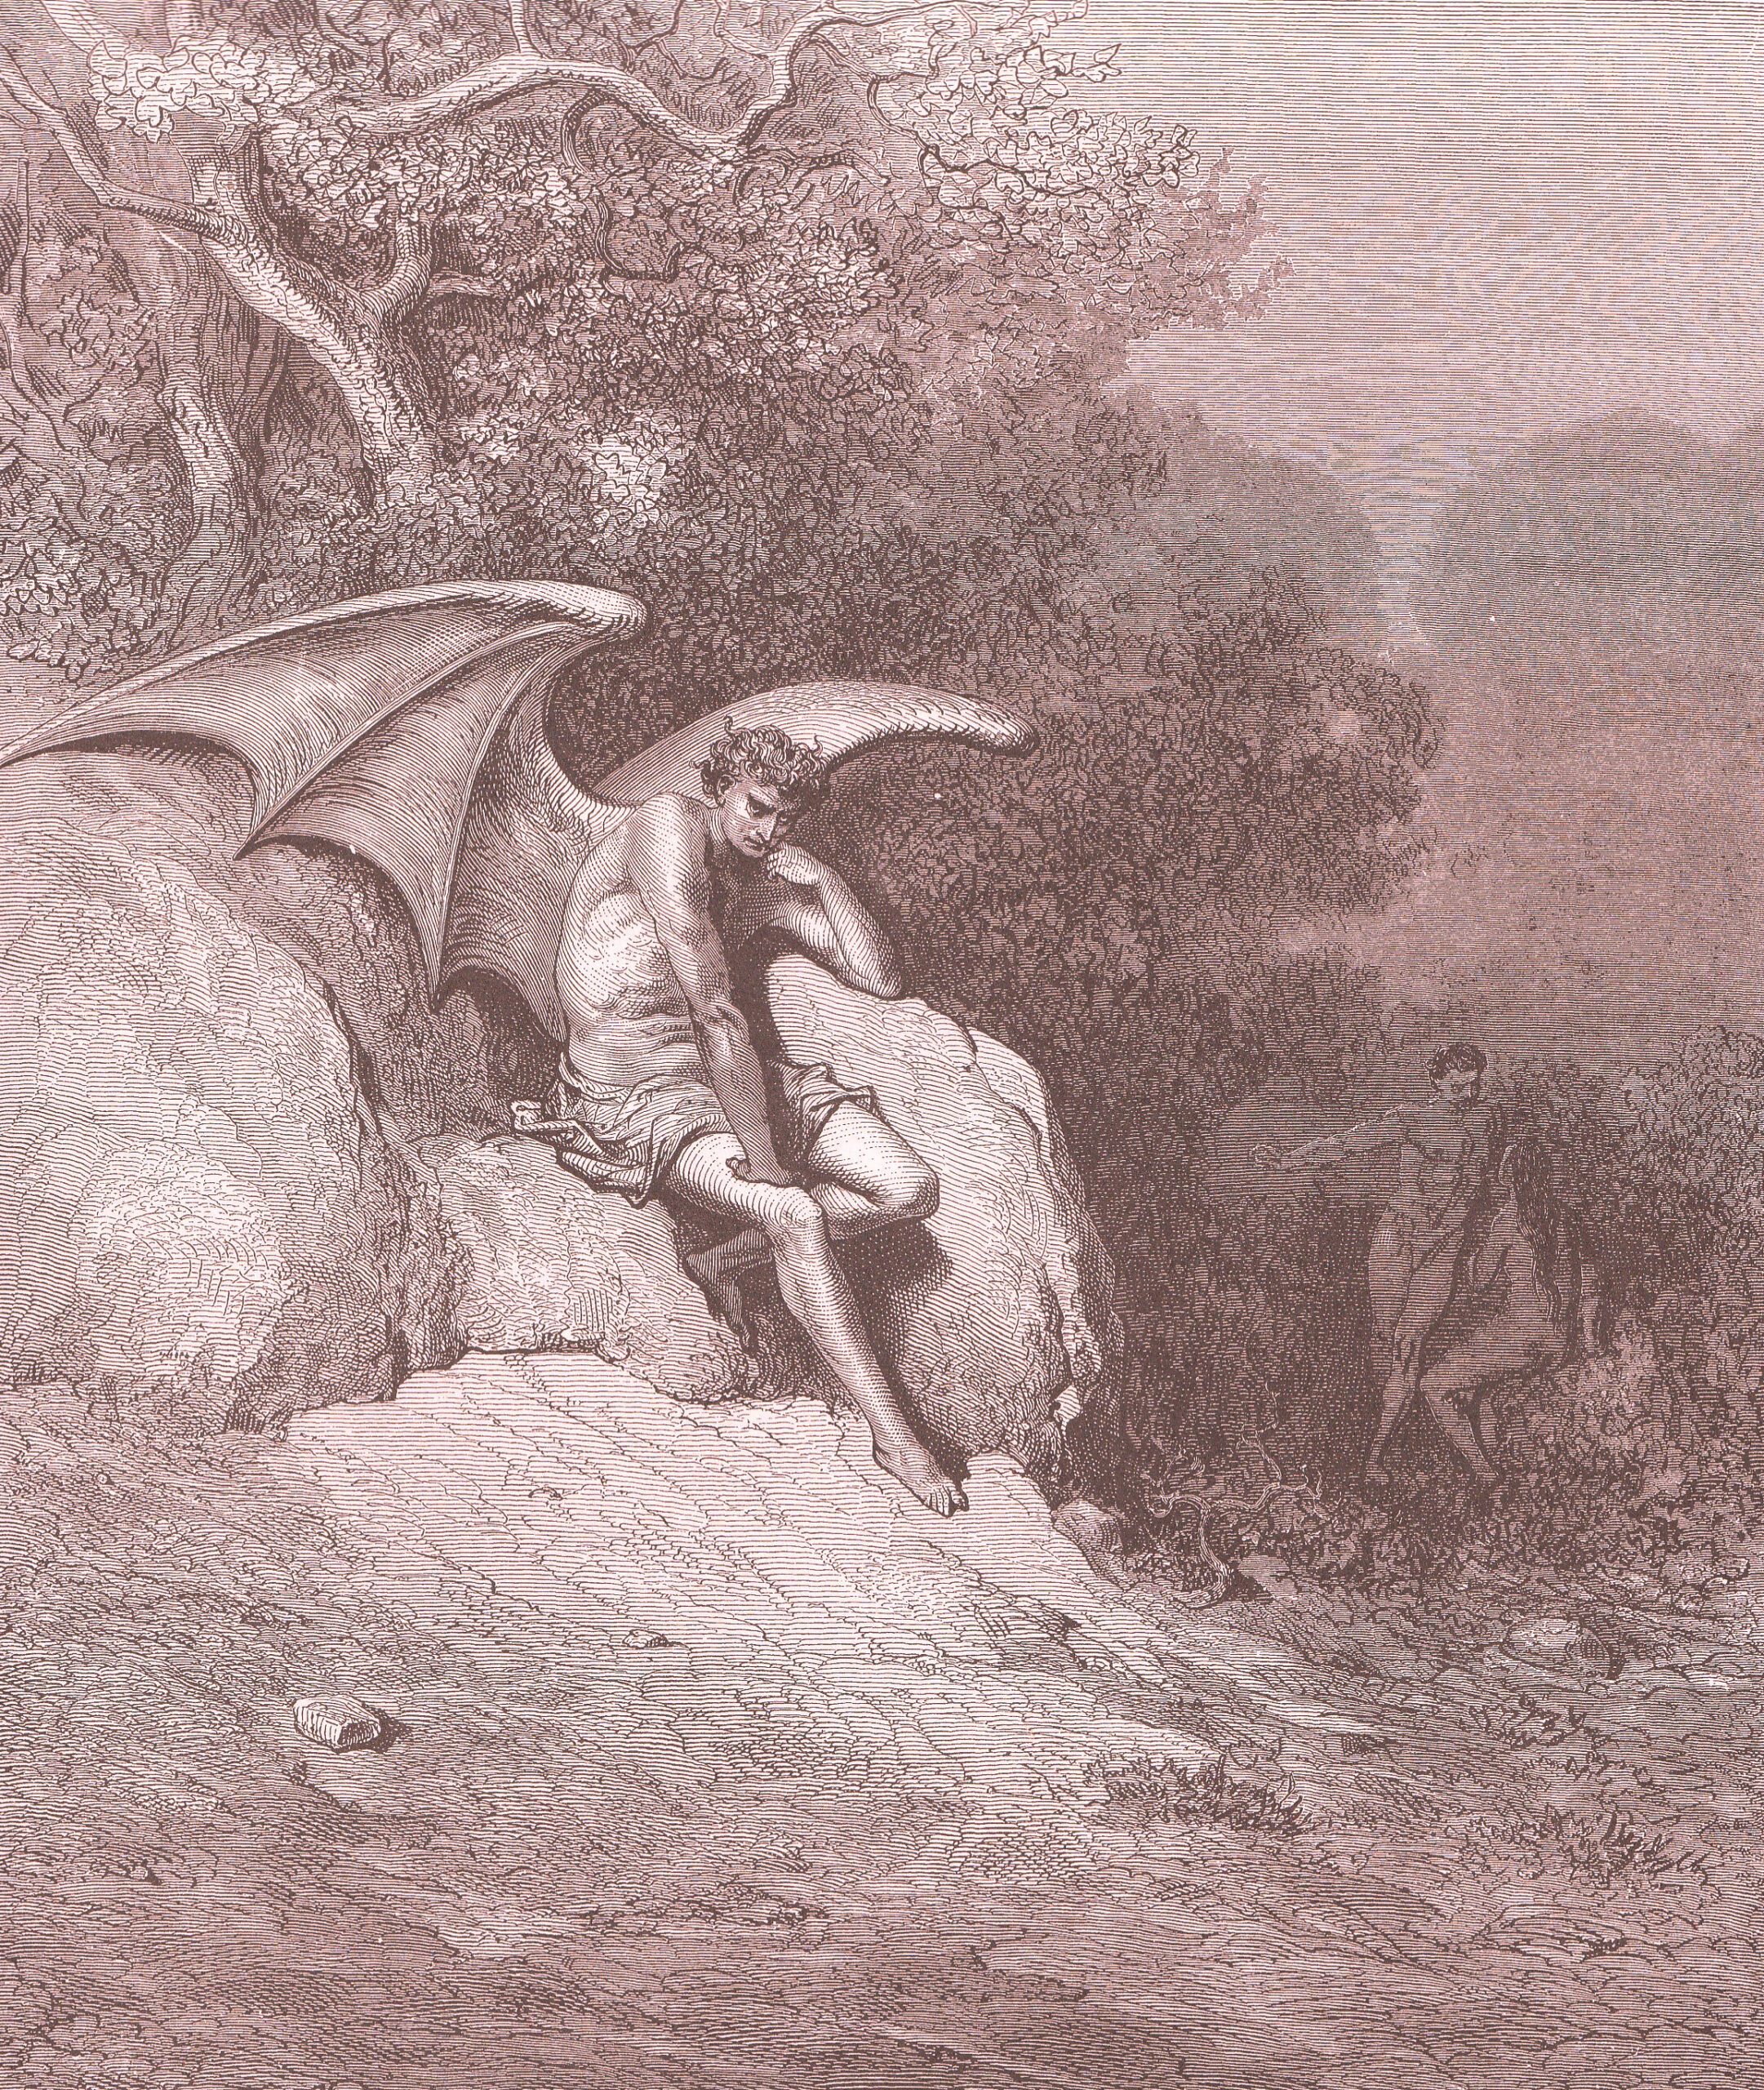 satan in eden -by Gustave Doré